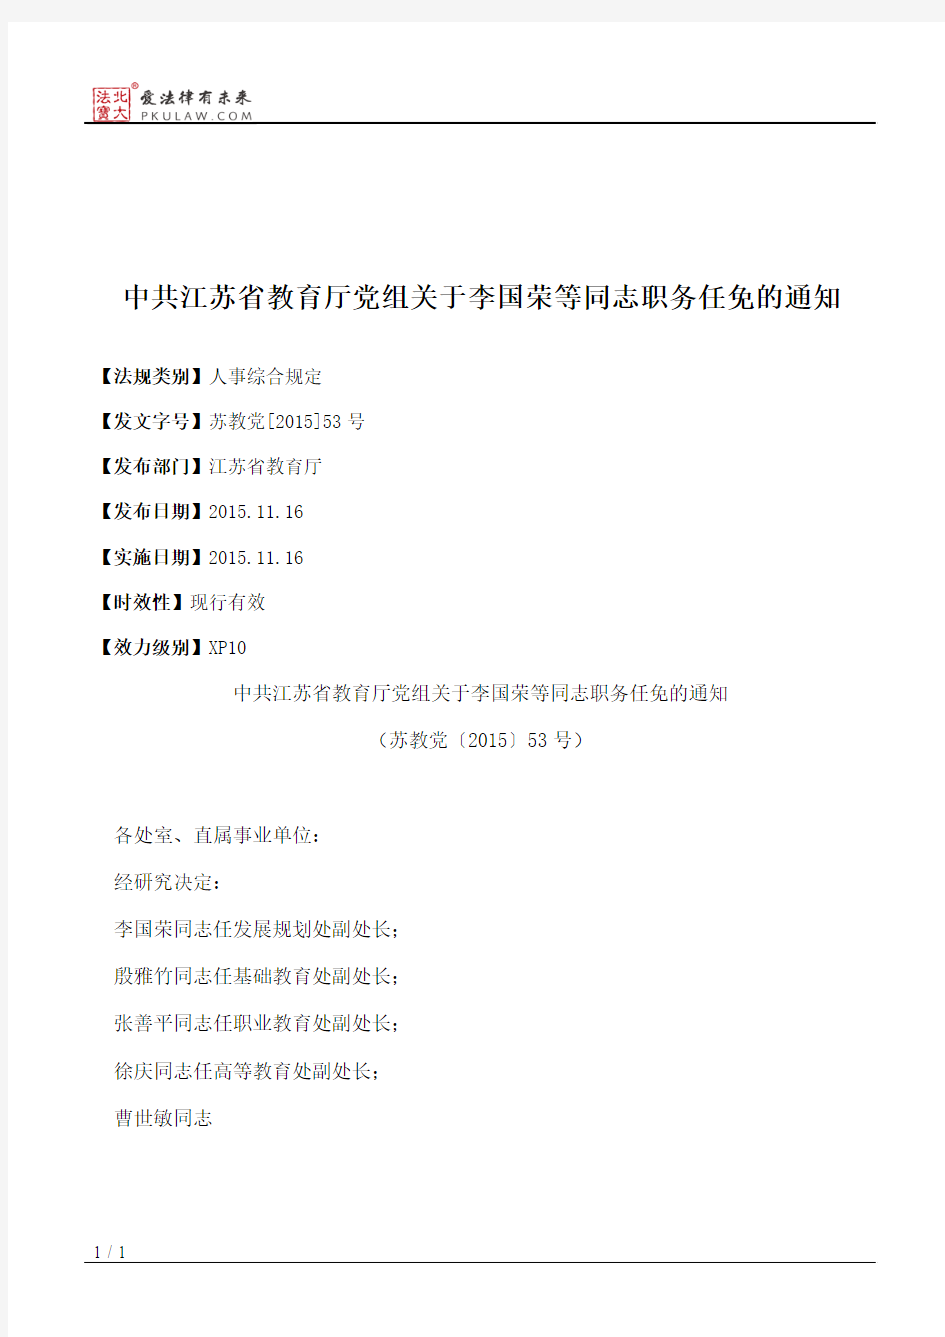 中共江苏省教育厅党组关于李国荣等同志职务任免的通知